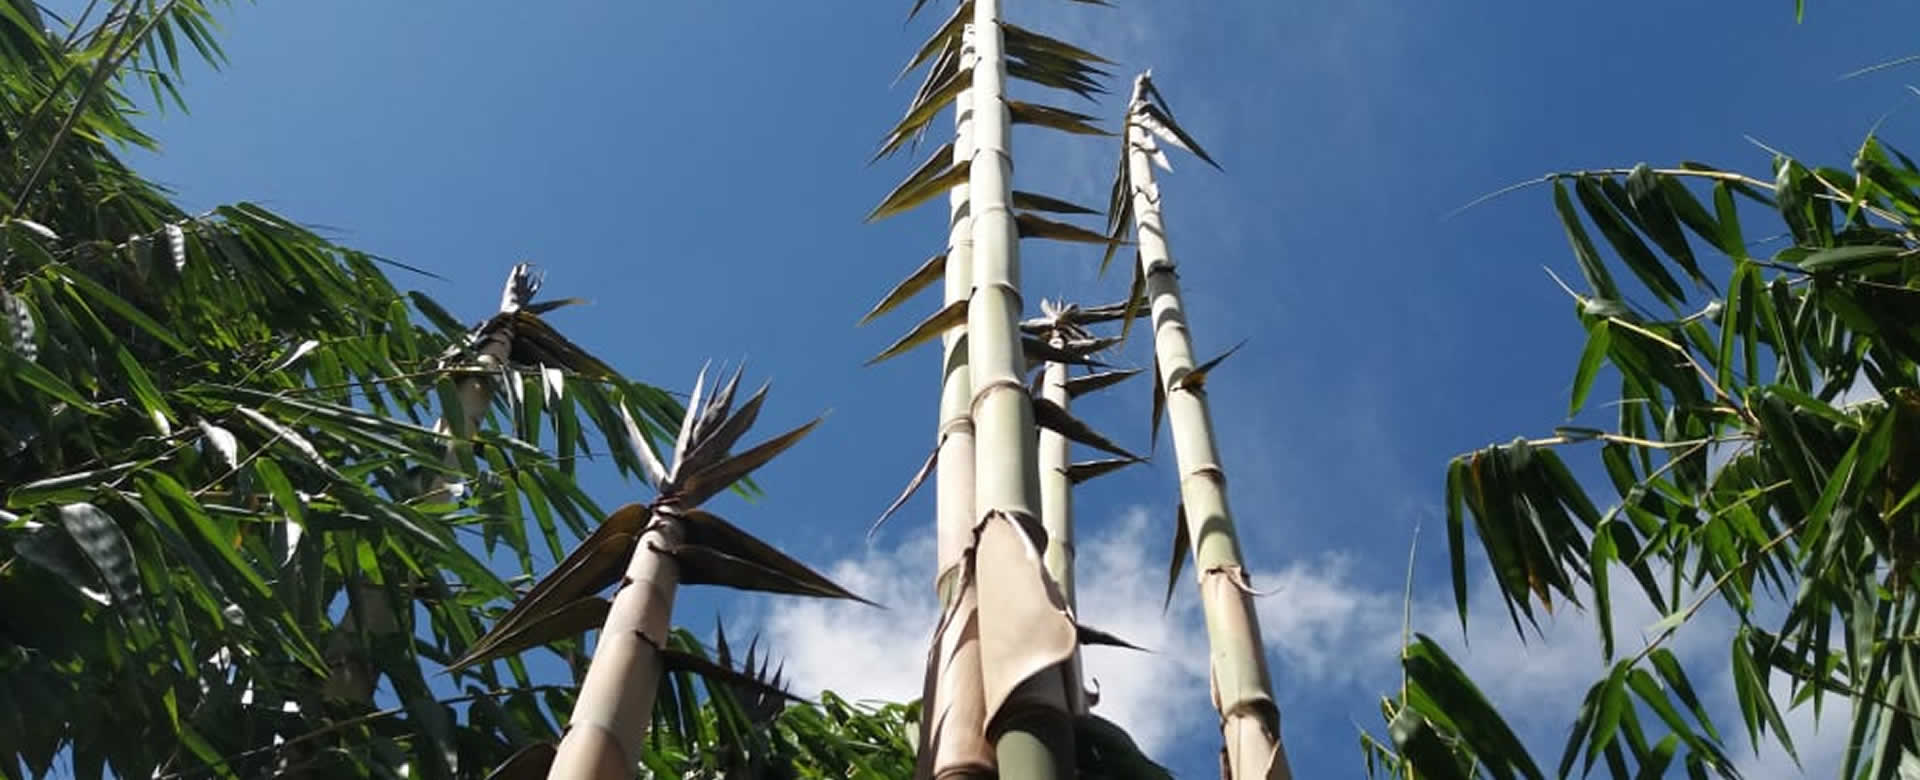 Avanza proyecto bambú en el municipio de Diriomo